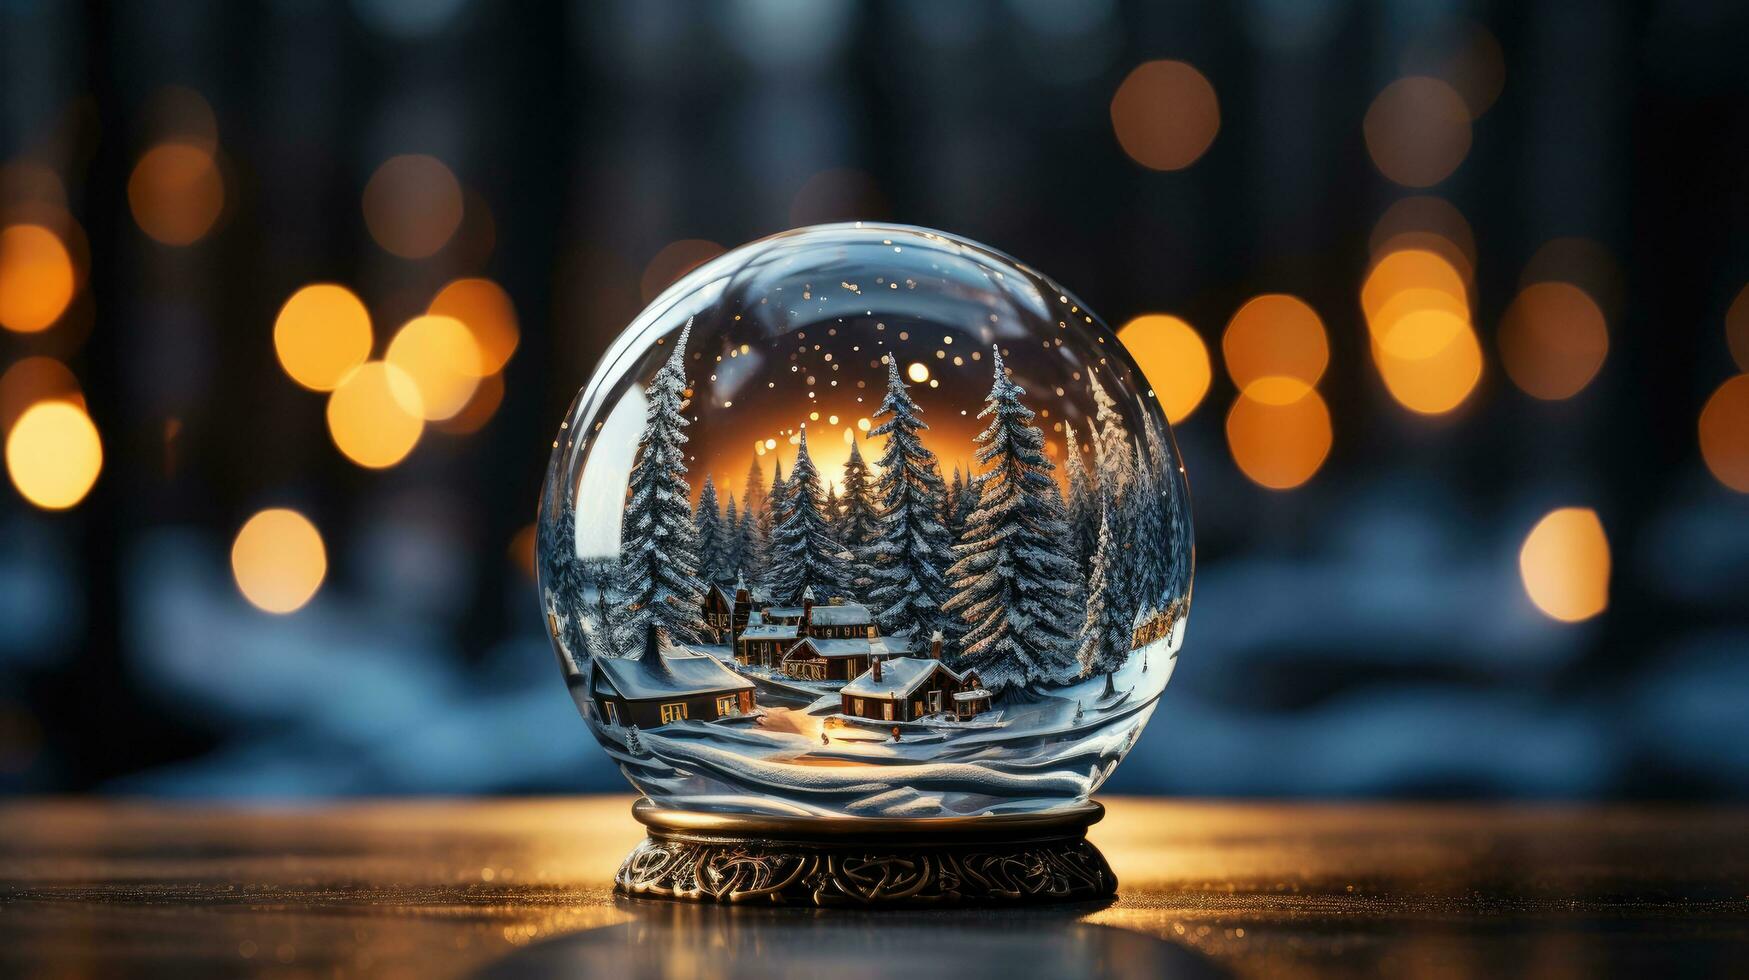 jul vinter- ny år Semester glas boll med snö täckt gran skog foto